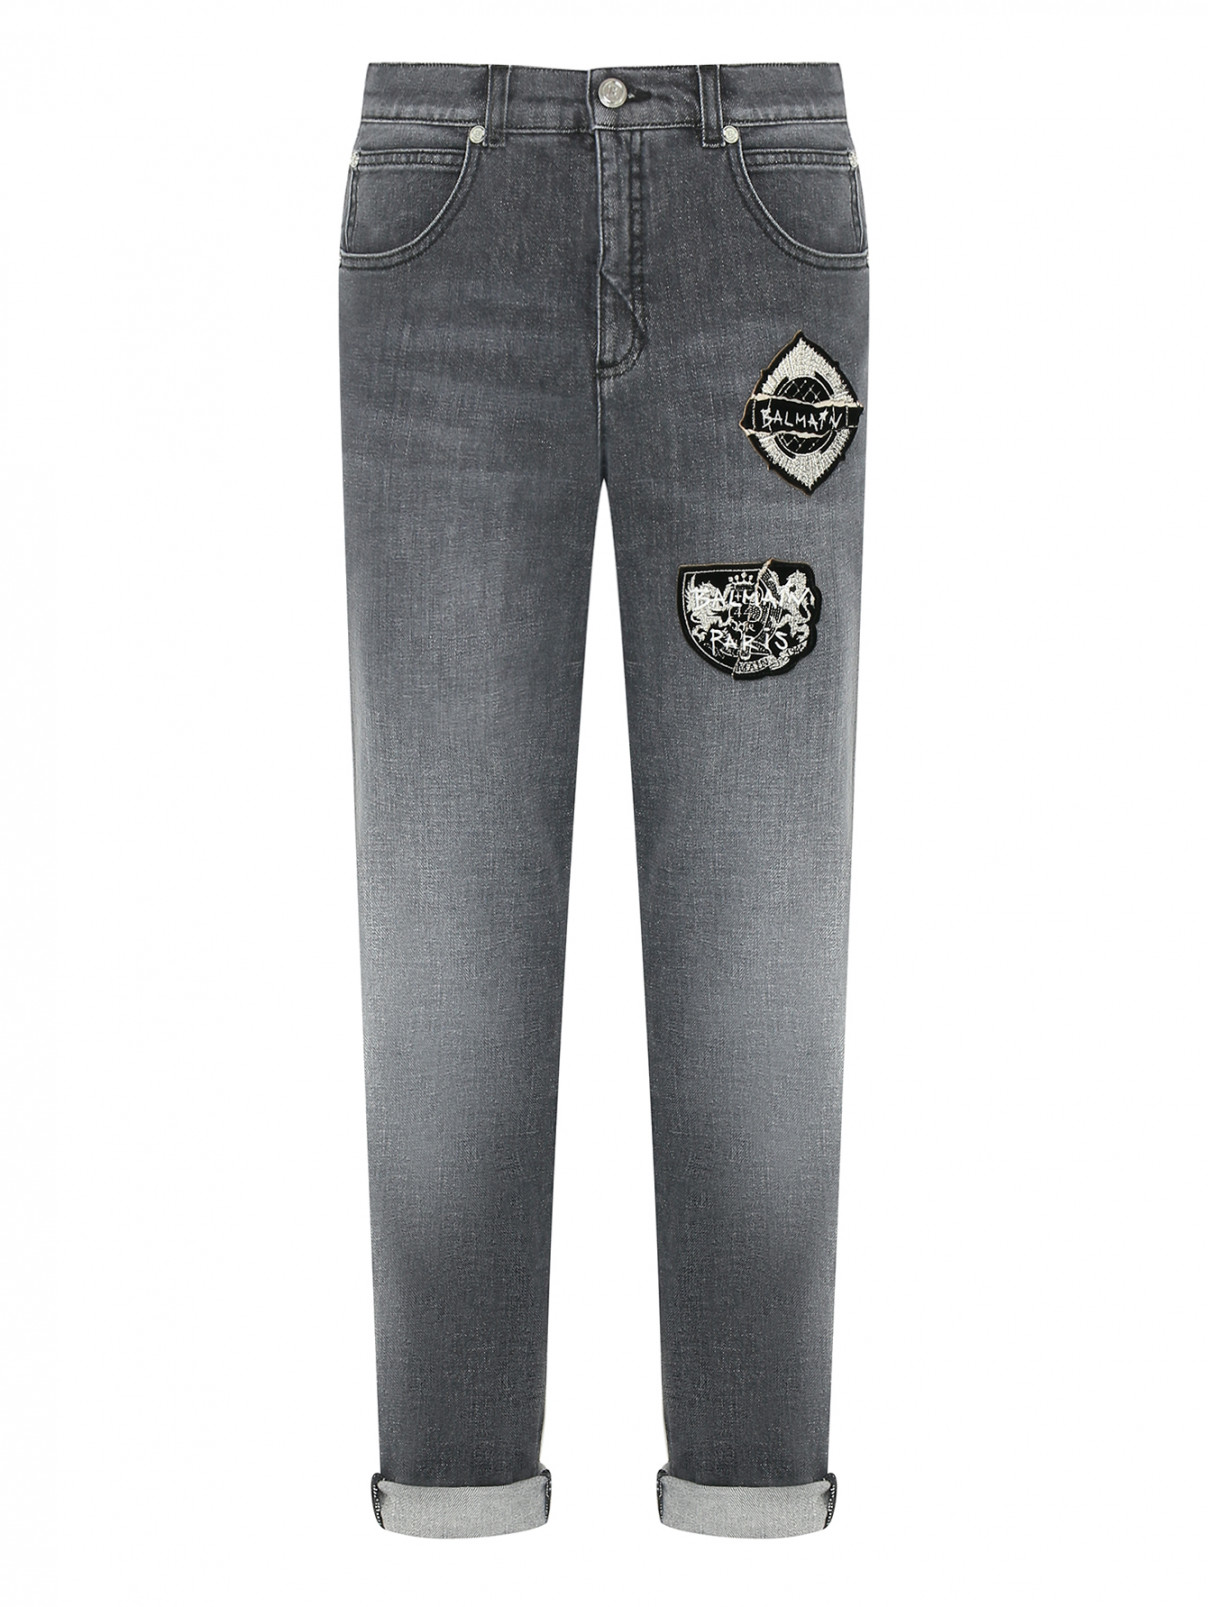 Прямые джинсы с аппликацией BALMAIN  –  Общий вид  – Цвет:  Серый